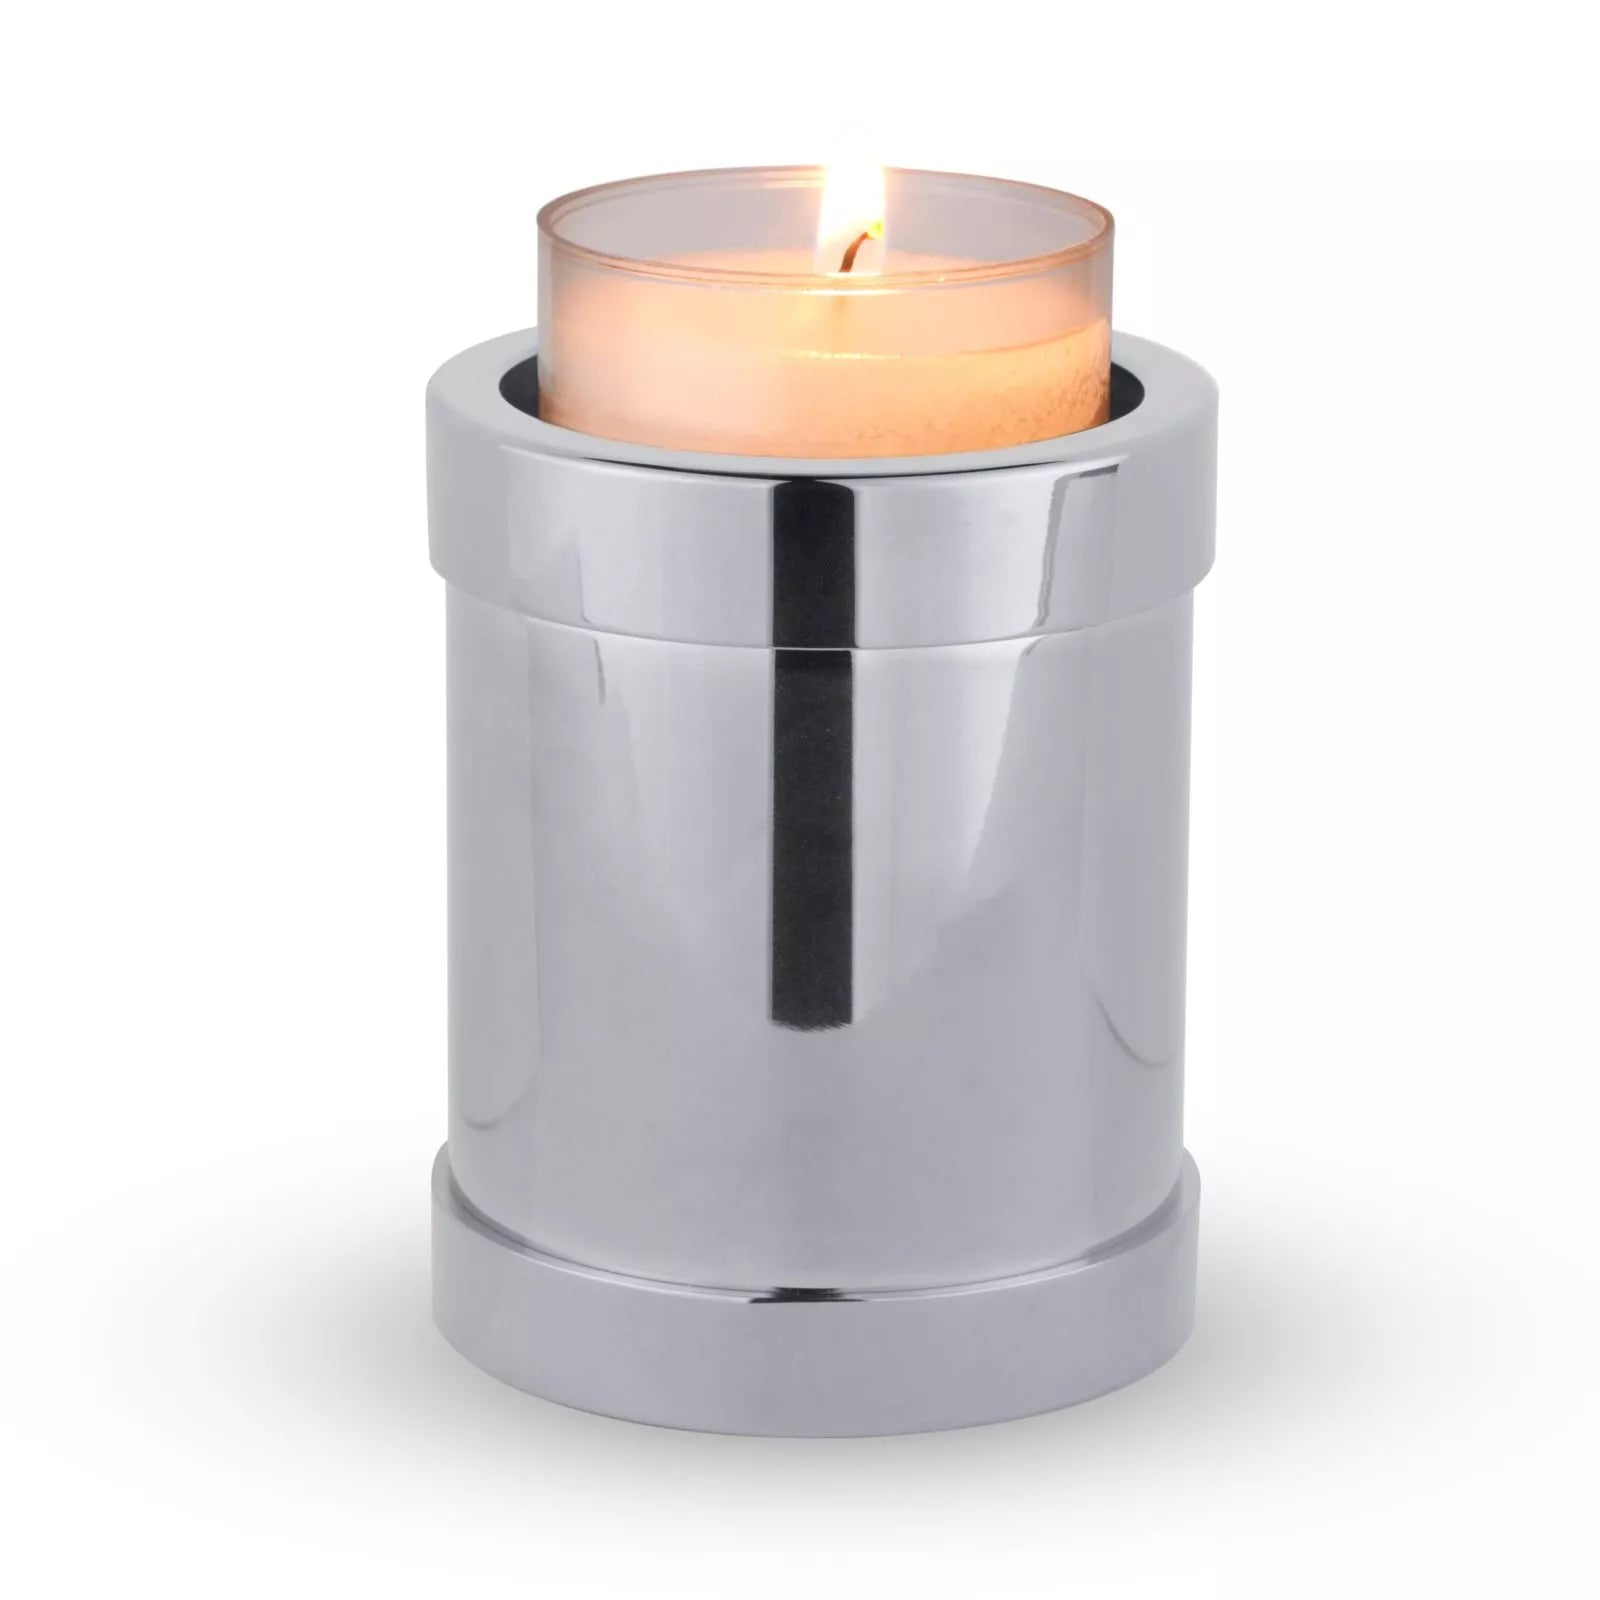 Mini urn - Candle holder